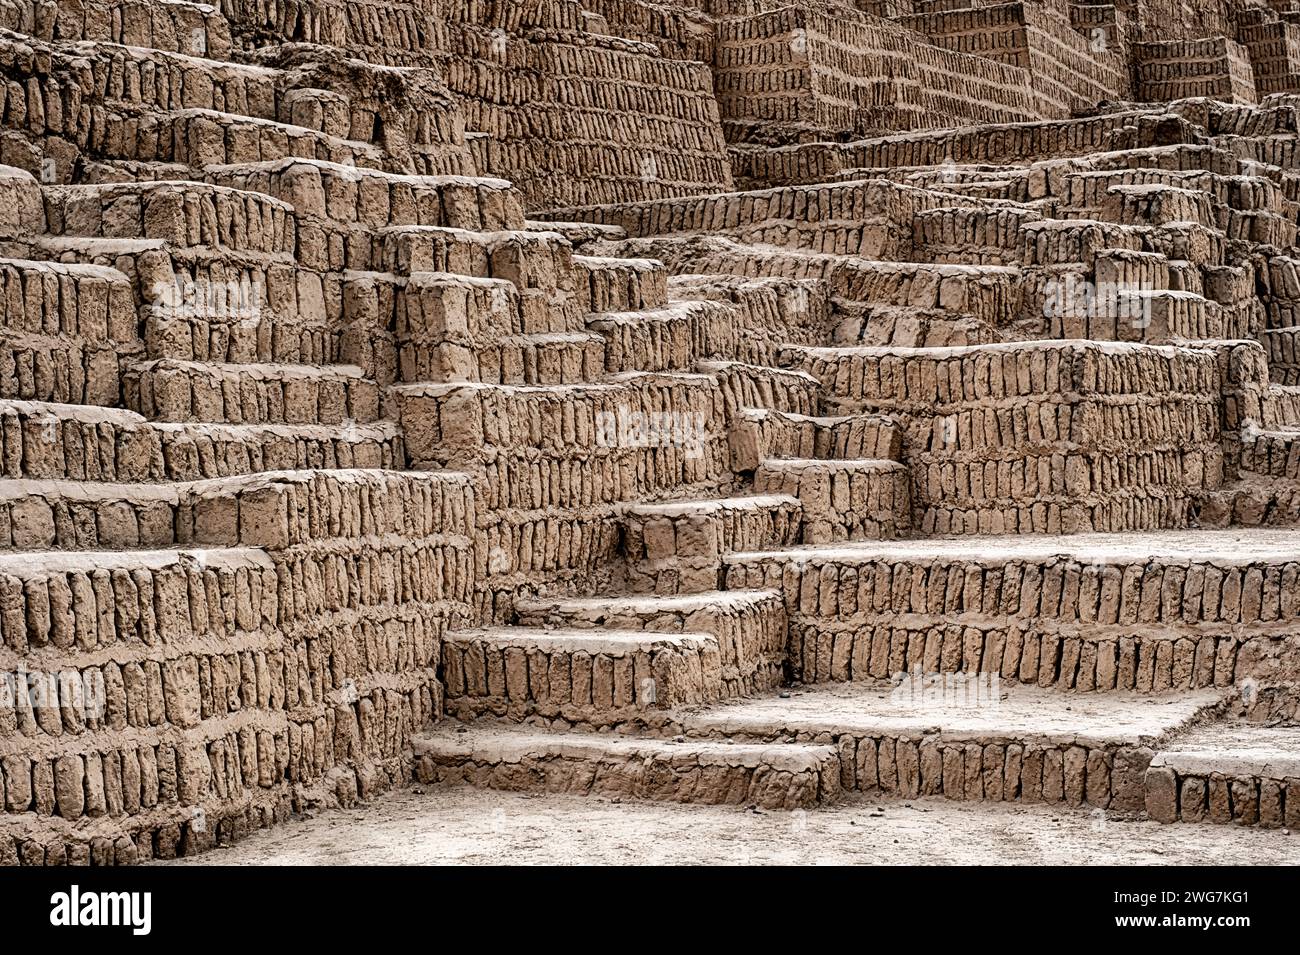 Die antiken Ruinen der Huaca Pucllana Pyramide in Lima sind aus Reihen getrockneter lehmziegel gebaut. Stockfoto